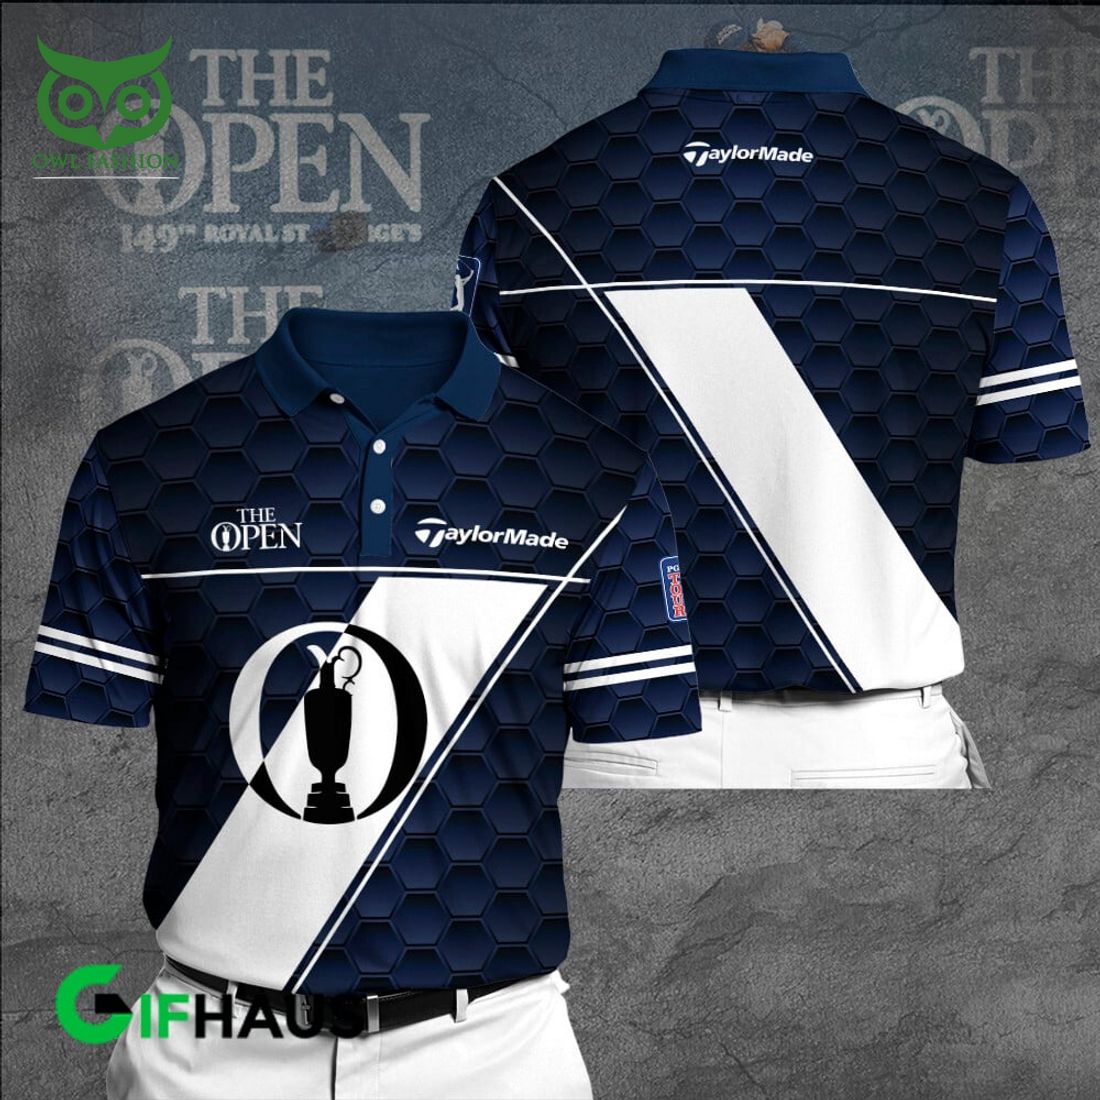 taylormade x the open championship golf ball pattern 3d shirt 1 qbUrG